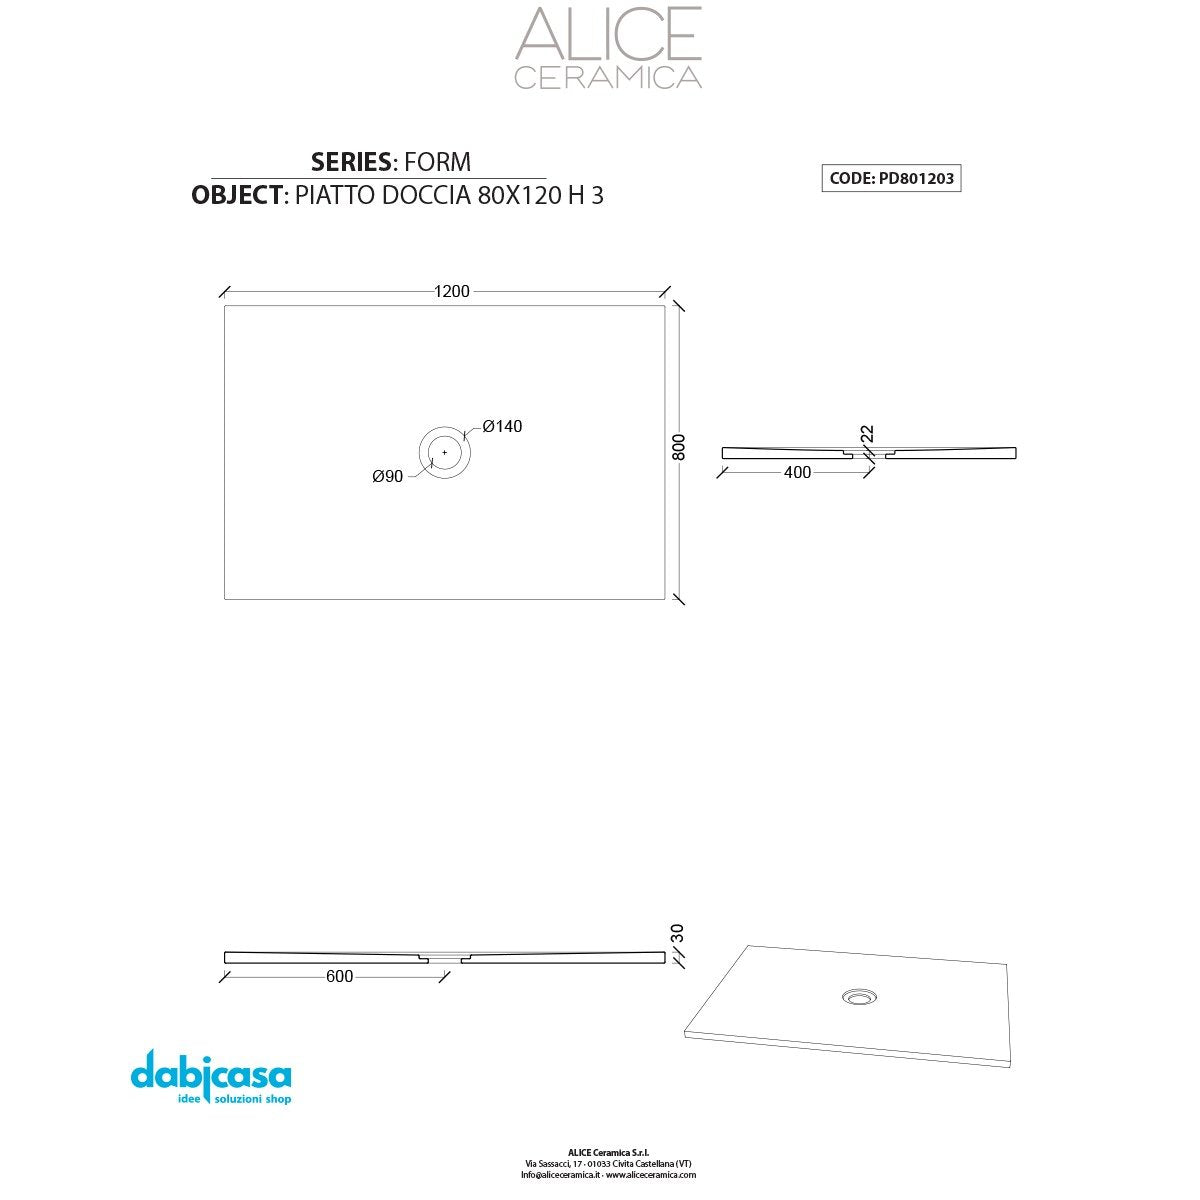 Piatto Doccia Alice Ceramica "Serie Form" 80x120 cm h 3 Colore Antracite freeshipping - Dabicasa